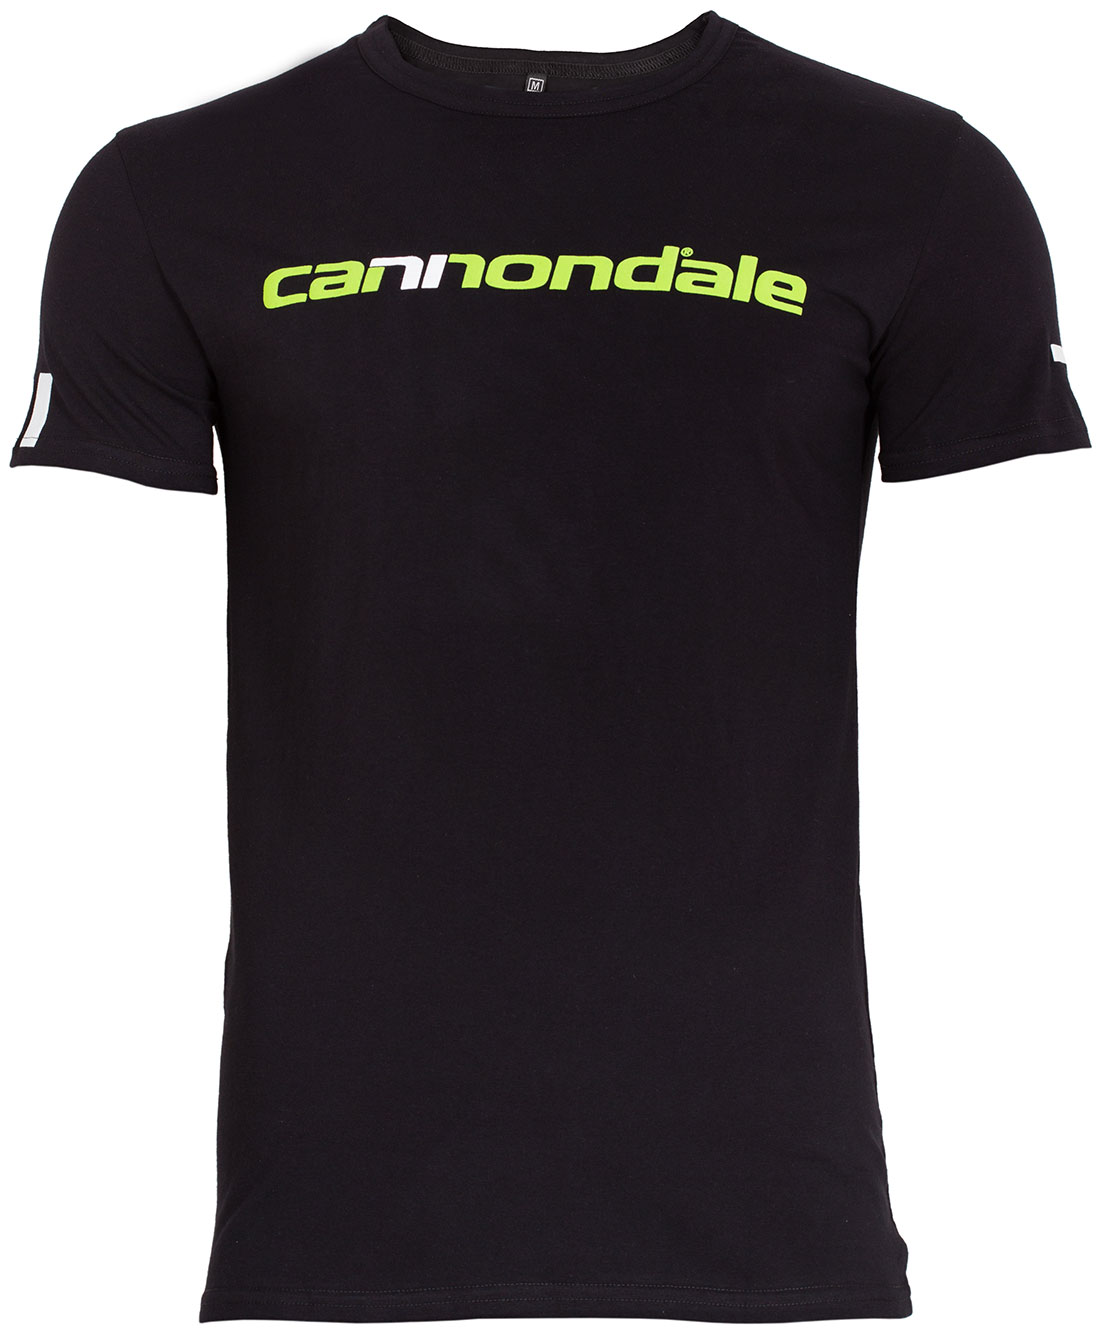 Футболка Cannondale з горизонтальним двоколірним логотипом, чорна, розмір XL фото 